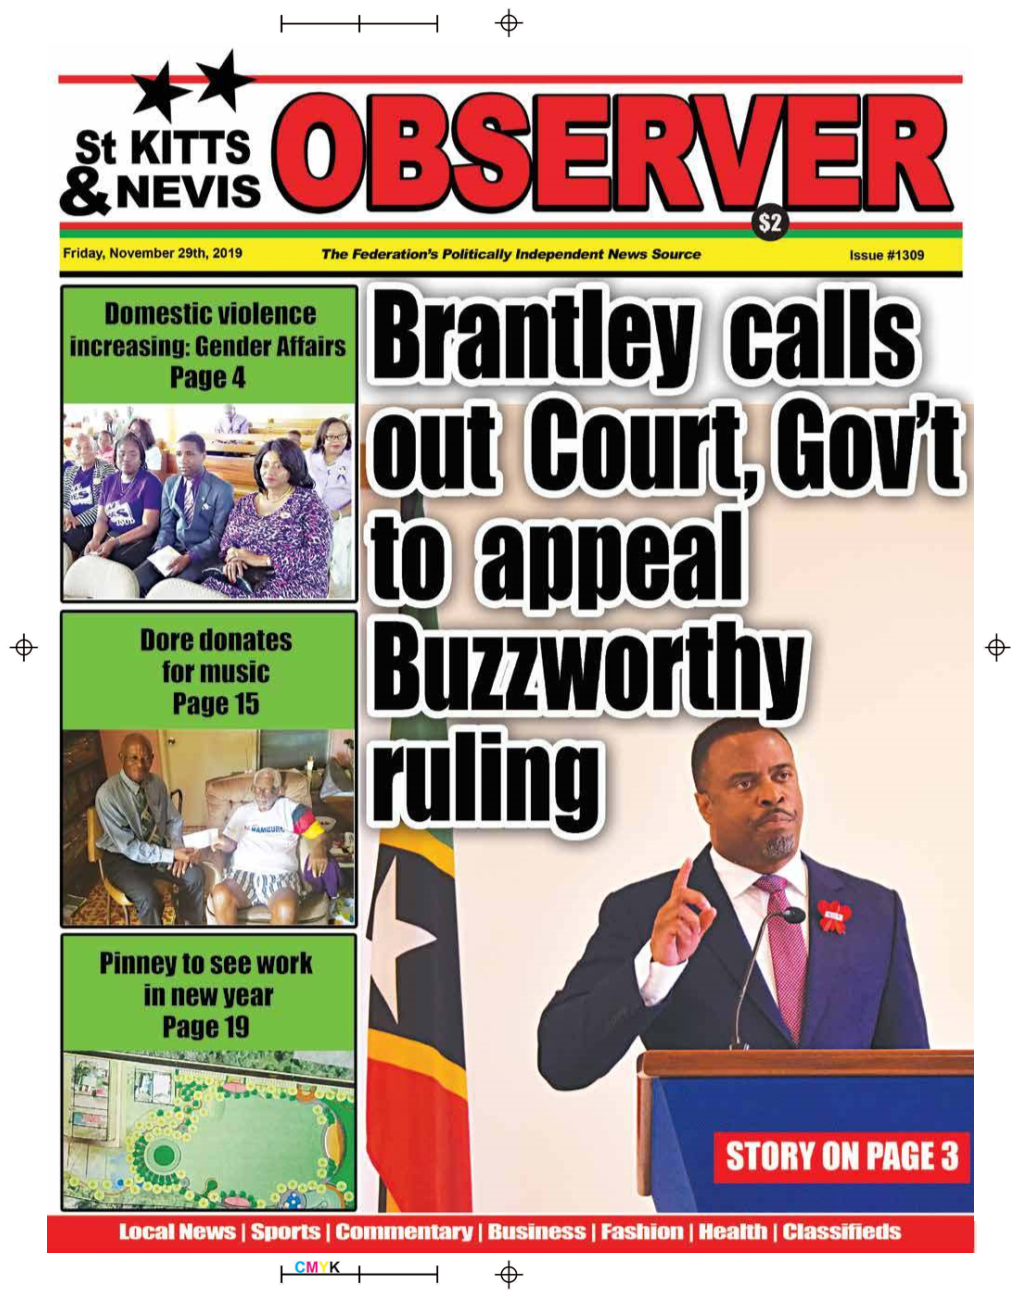 The St Kitts Nevis Observer